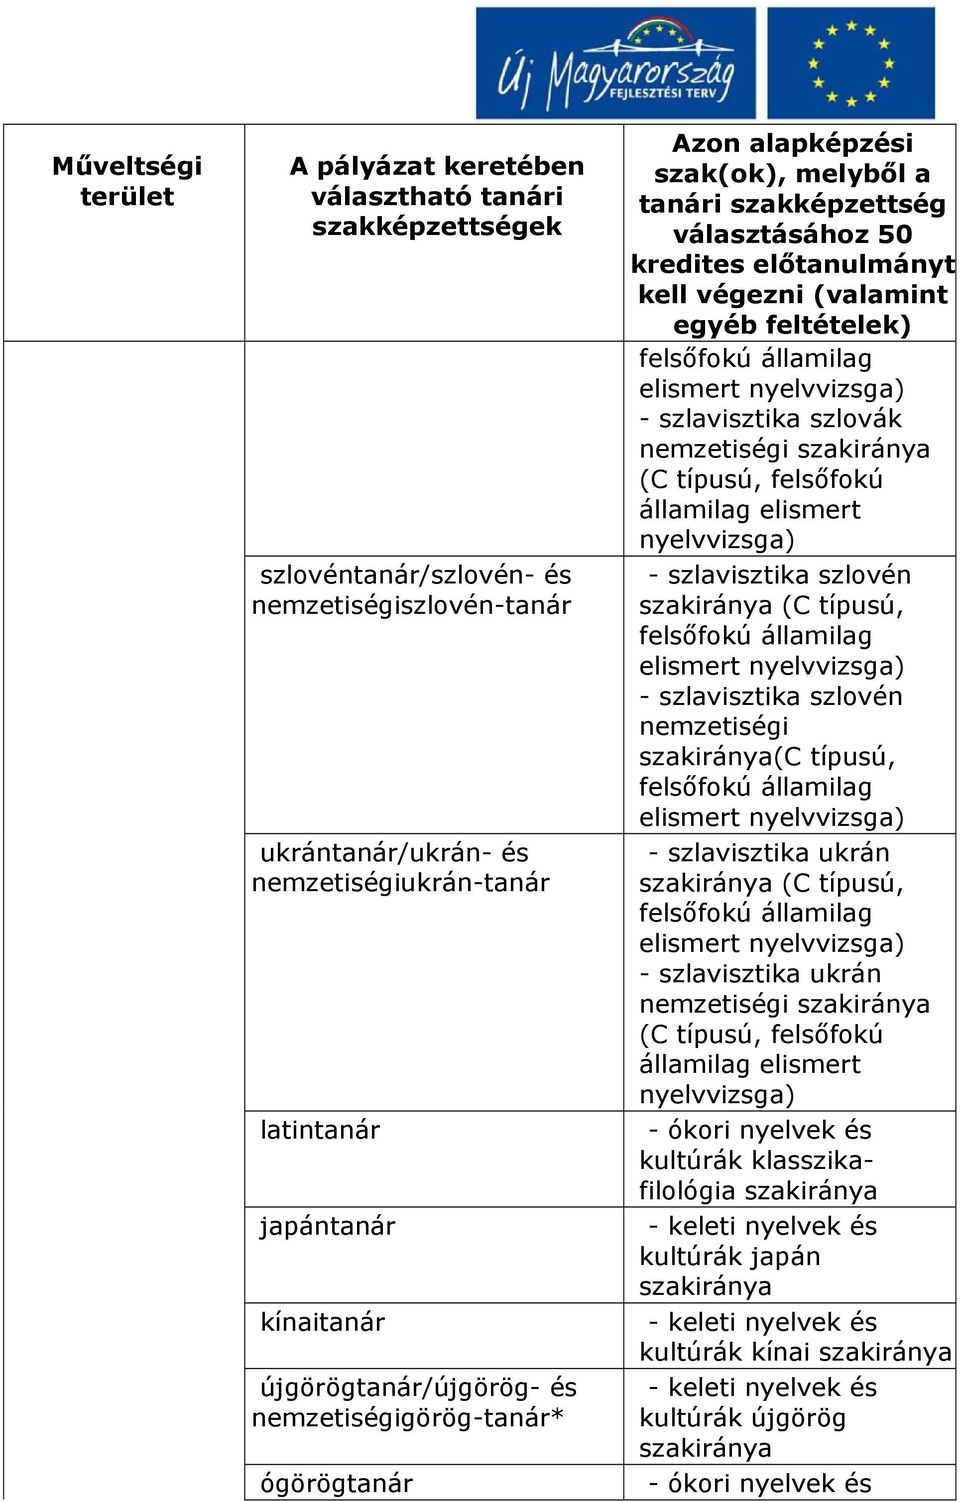 szlovén nemzetiségi szakiránya(c típusú, - szlavisztika ukrán - szlavisztika ukrán nemzetiségi szakiránya (C típusú, felsőfokú államilag elismert nyelvvizsga) - ókori nyelvek és